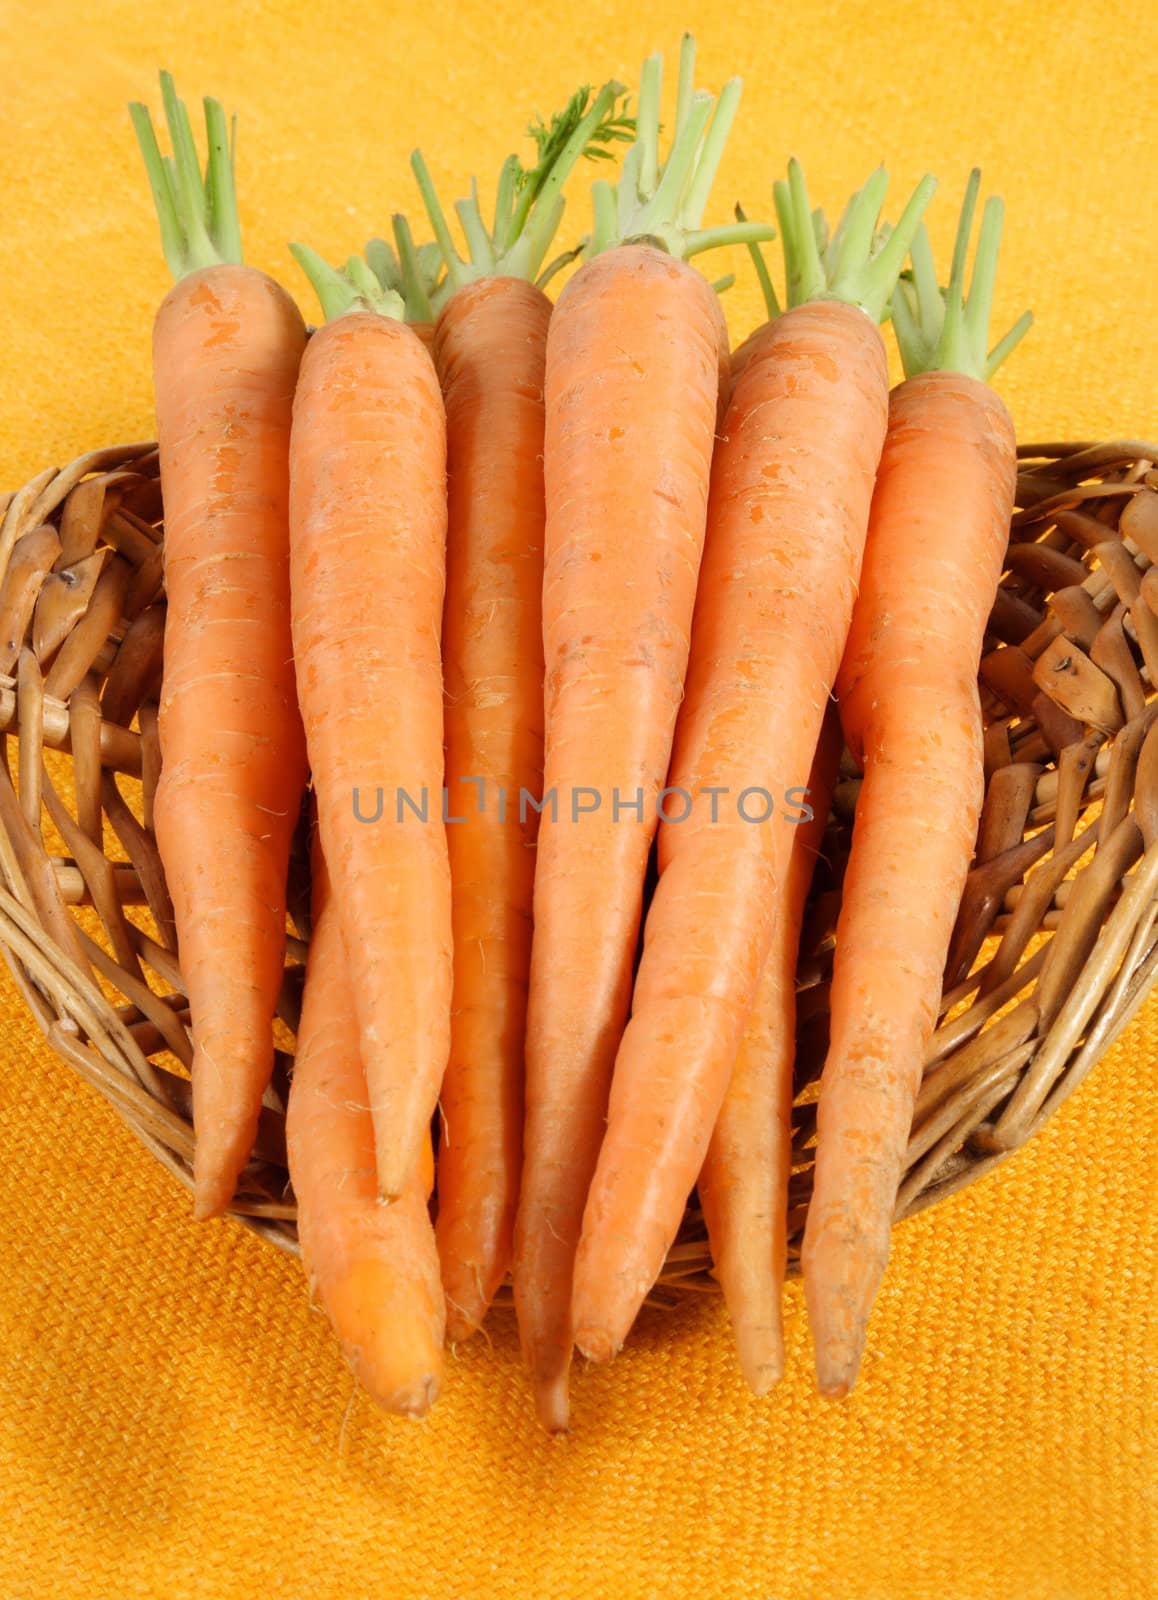 fresh carrots in a wicker basket